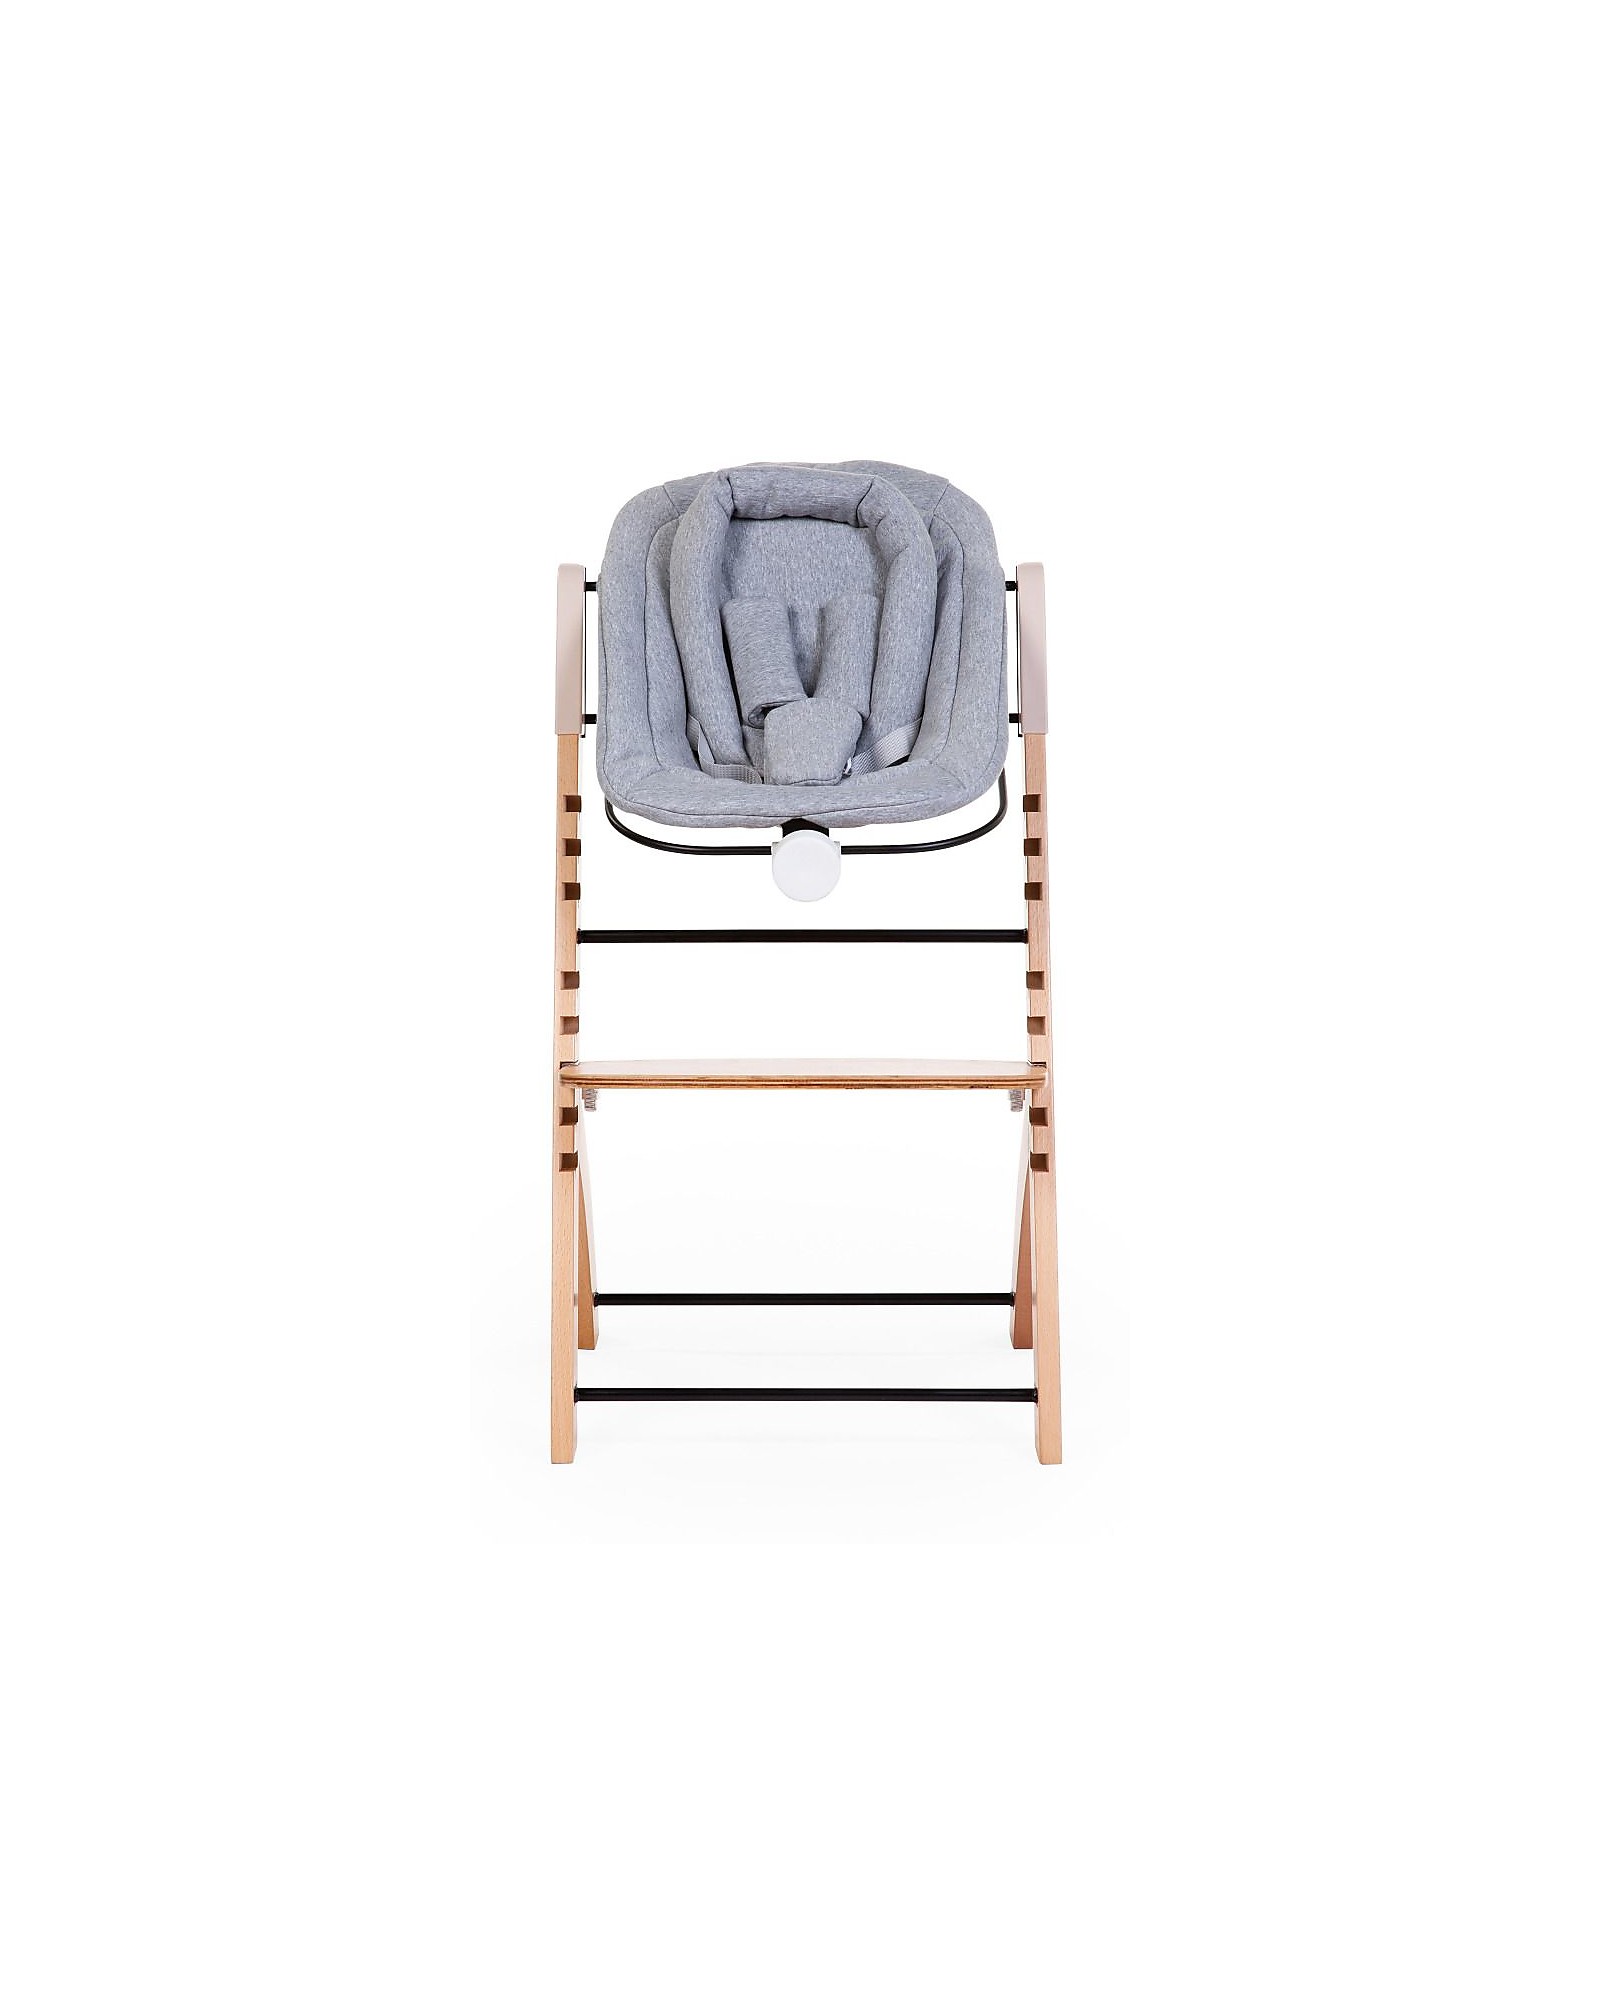 Baby Cushion, High Chair Accessories, High Chairs